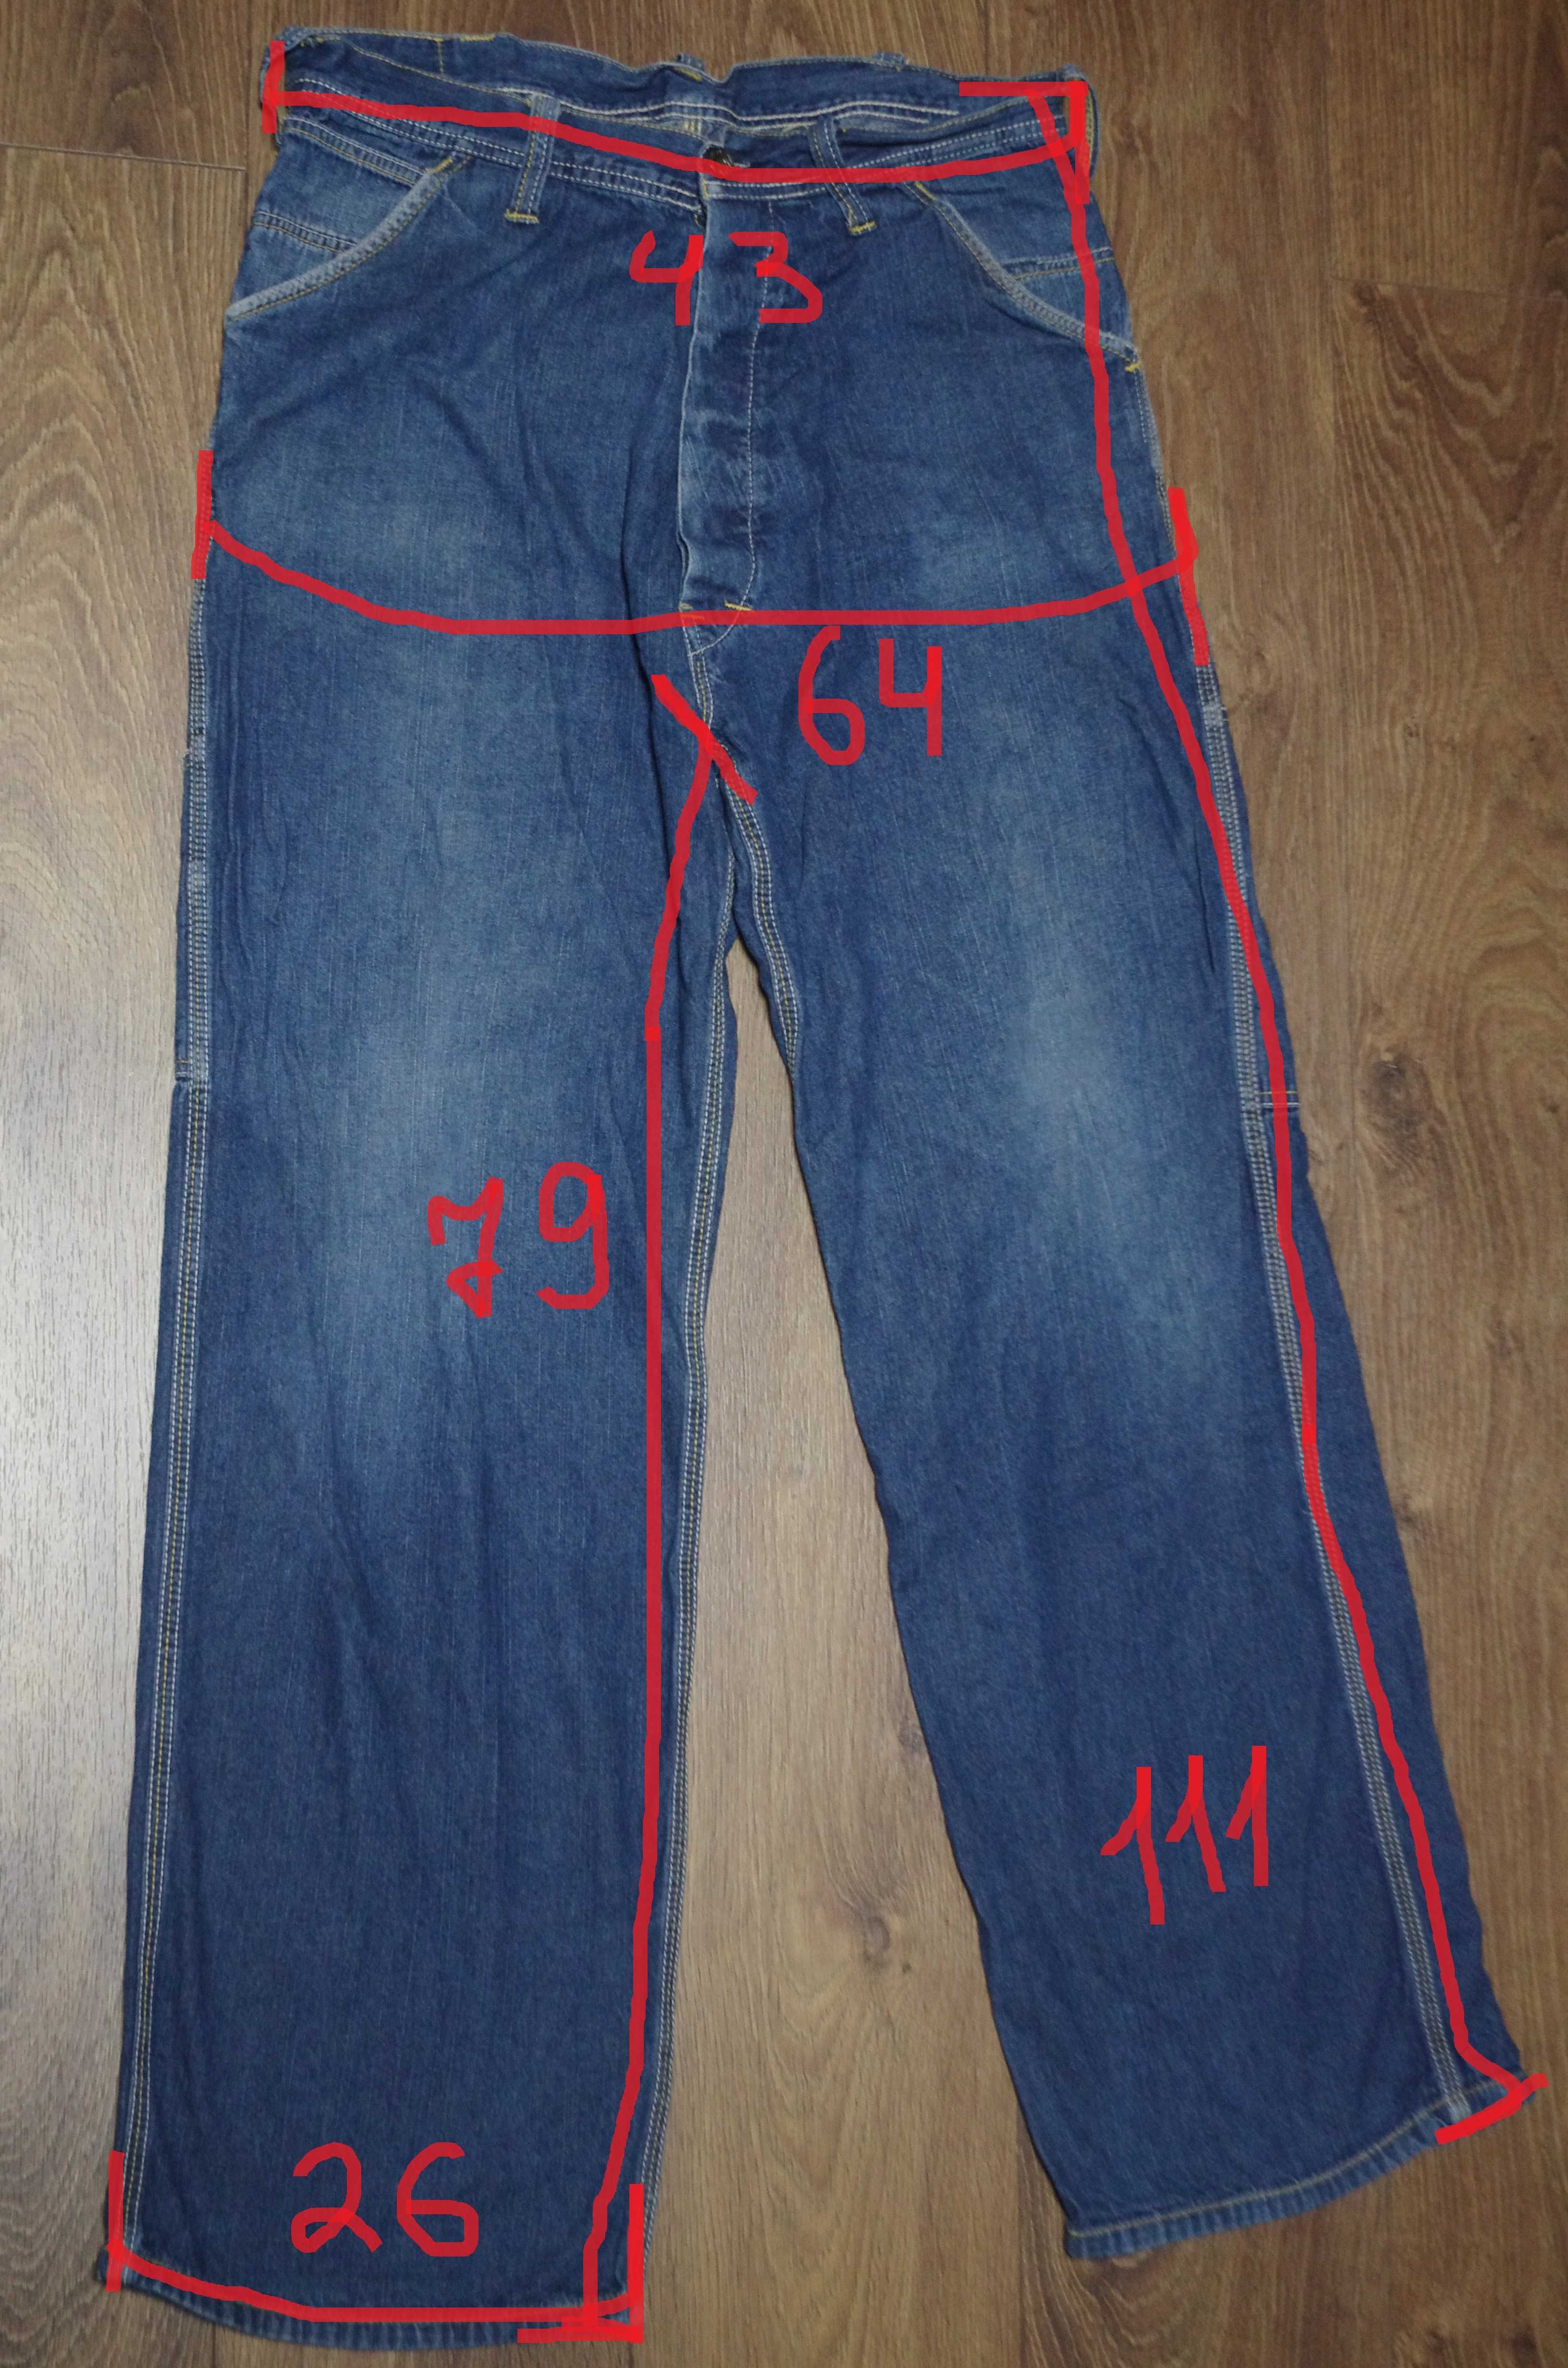 Джинсы Evisu Work Pants Jeans Lot 0620 Vintage Maharishi Denim M разм